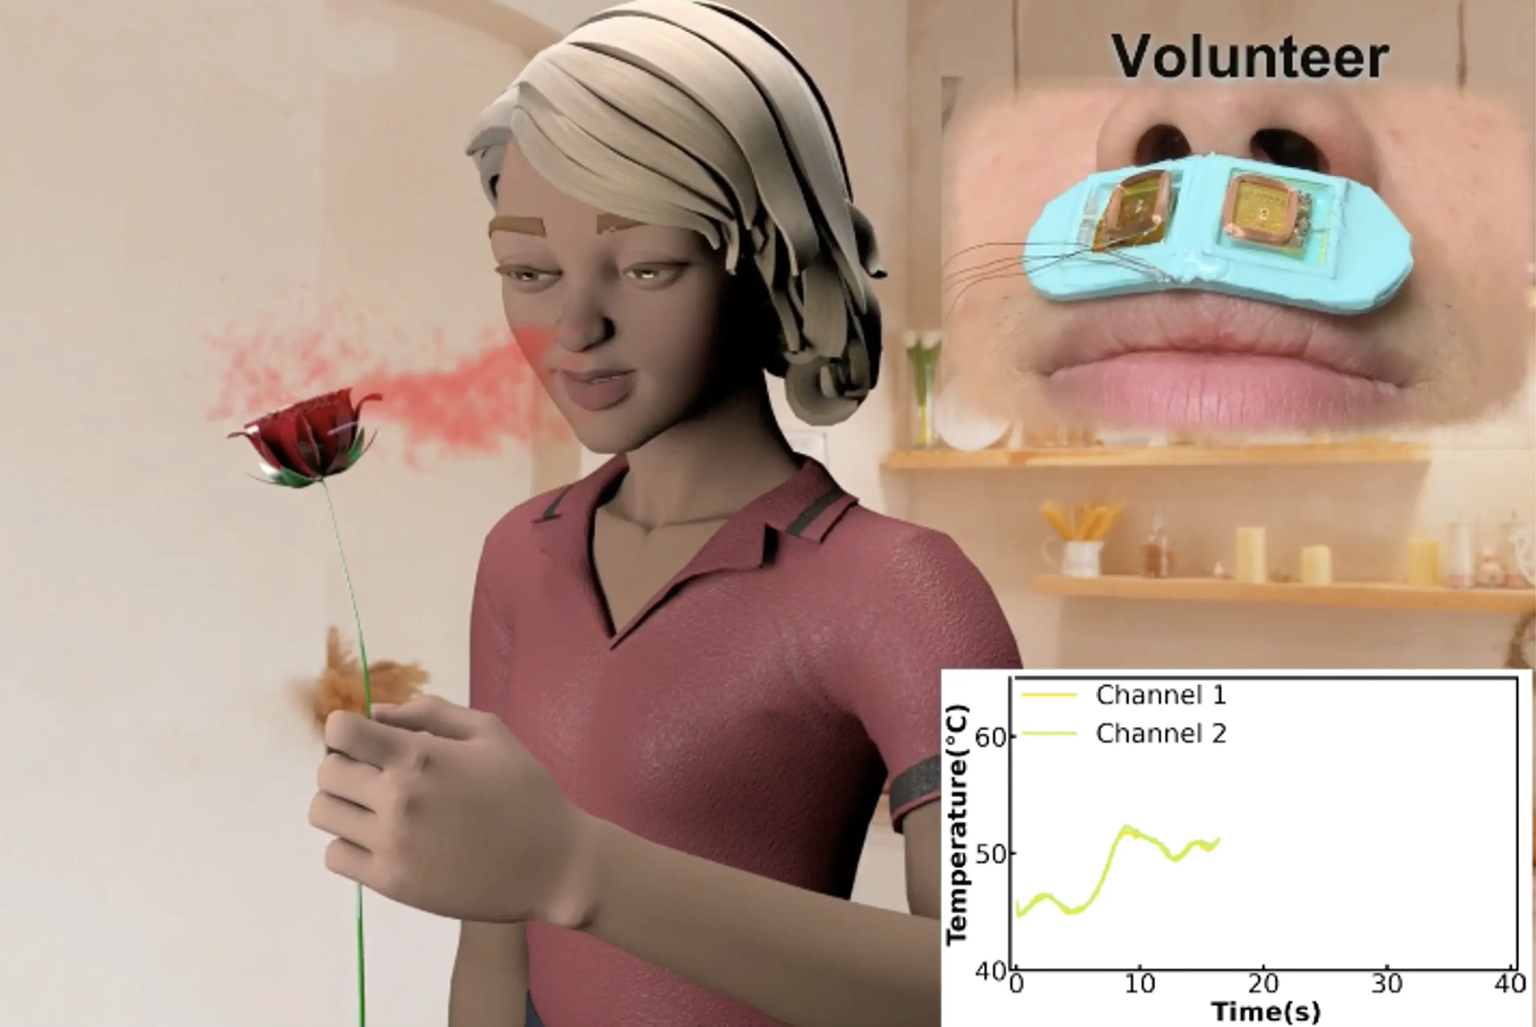 Hiinlased on leiutanud virtuaalreaalsuses lõhnade tajumiseks plaastrid